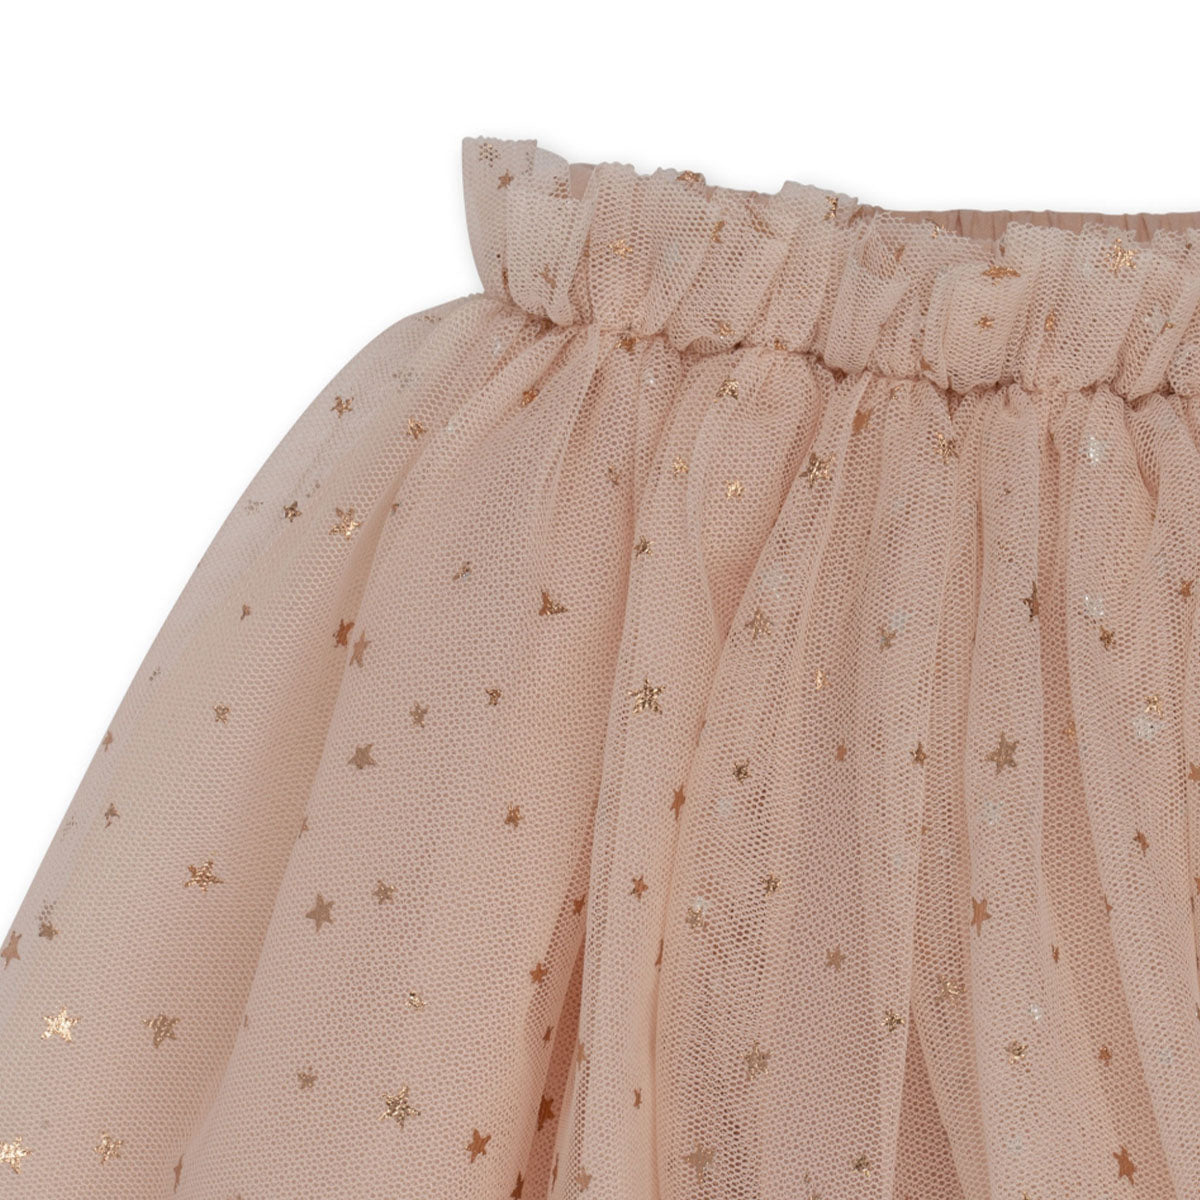 Is jouw kleintje een echte prinses? Dan is deze schattige Konges Slojd fairy ballerina rok blush een must have voor in de kledingkast van je lieveling. Deze rok ziet er namelijk super mooi en schattig uit! De prachtige rok heeft een roze kleur en is gemaakt van 100% polyester met een katoenen voering. 